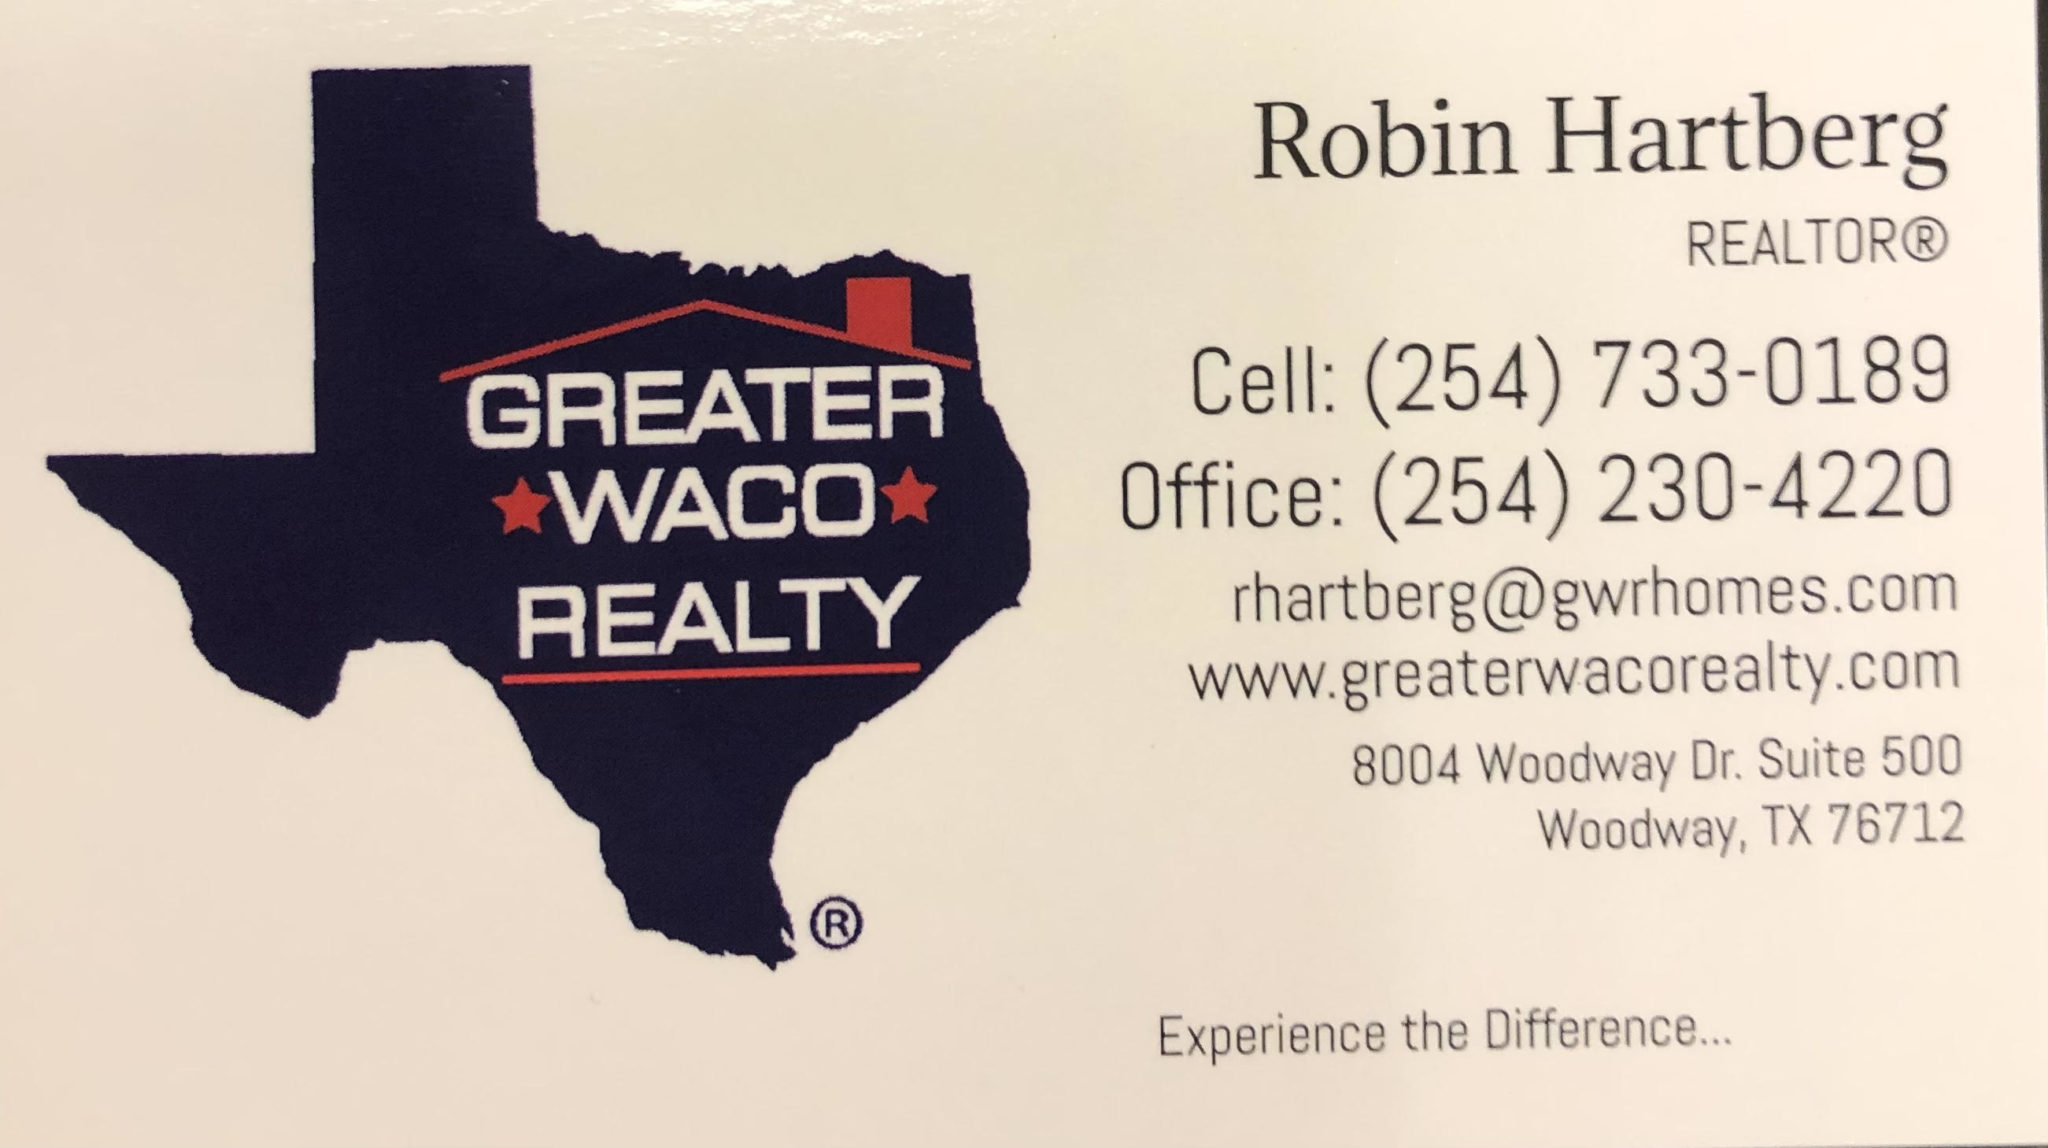 Greater Waco Realty - Robin Hartberg Realtor